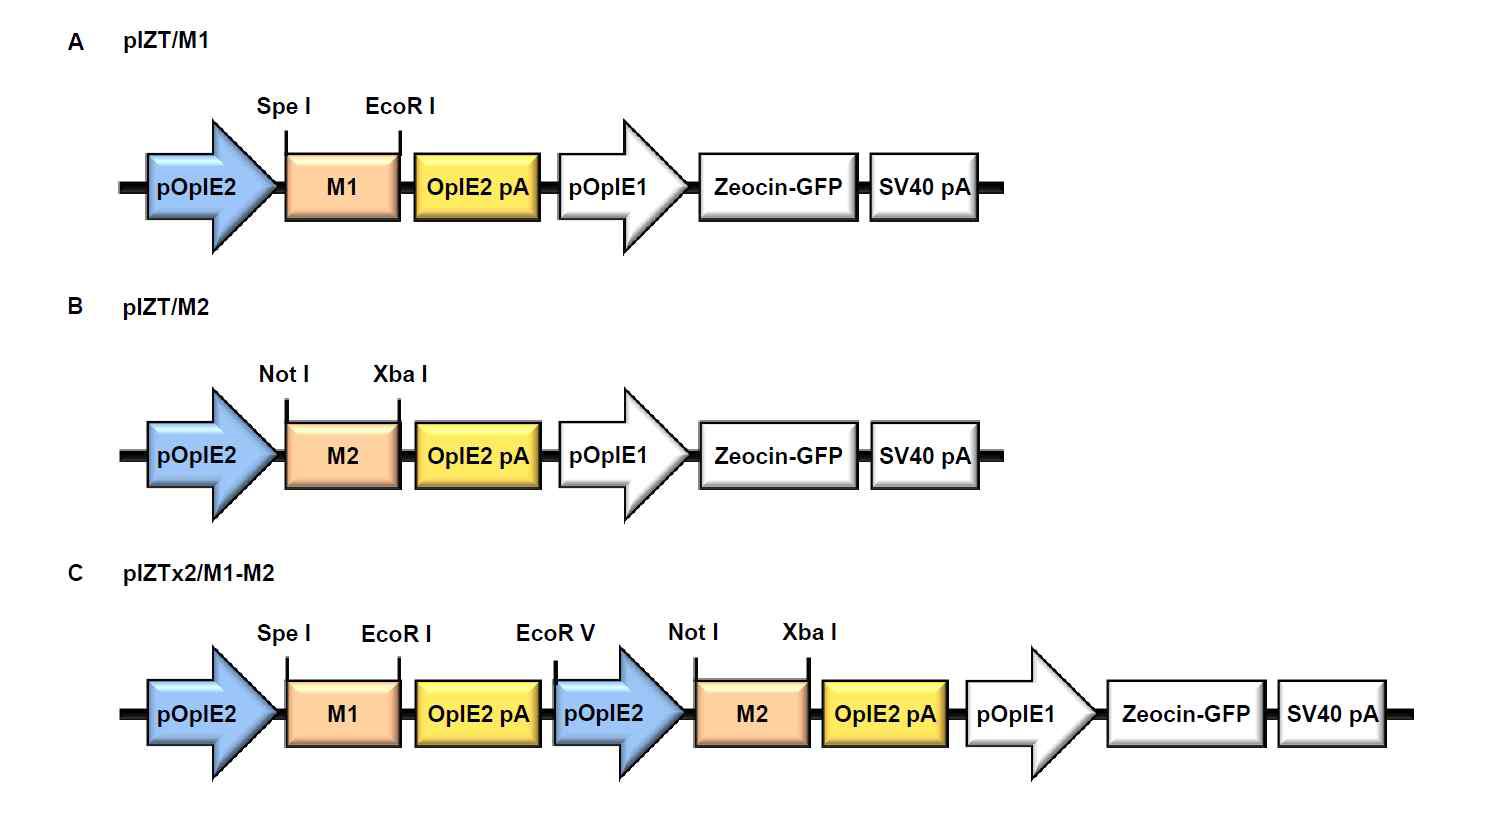 인플루엔자 바이러스 M1, M2 유전자를 각각 또는 함께 발현시키기 위한 pIZT/M1 (A), pIZT/M2 (B), pIZT×2/M1-M2 (C) 벡터의 모식도.